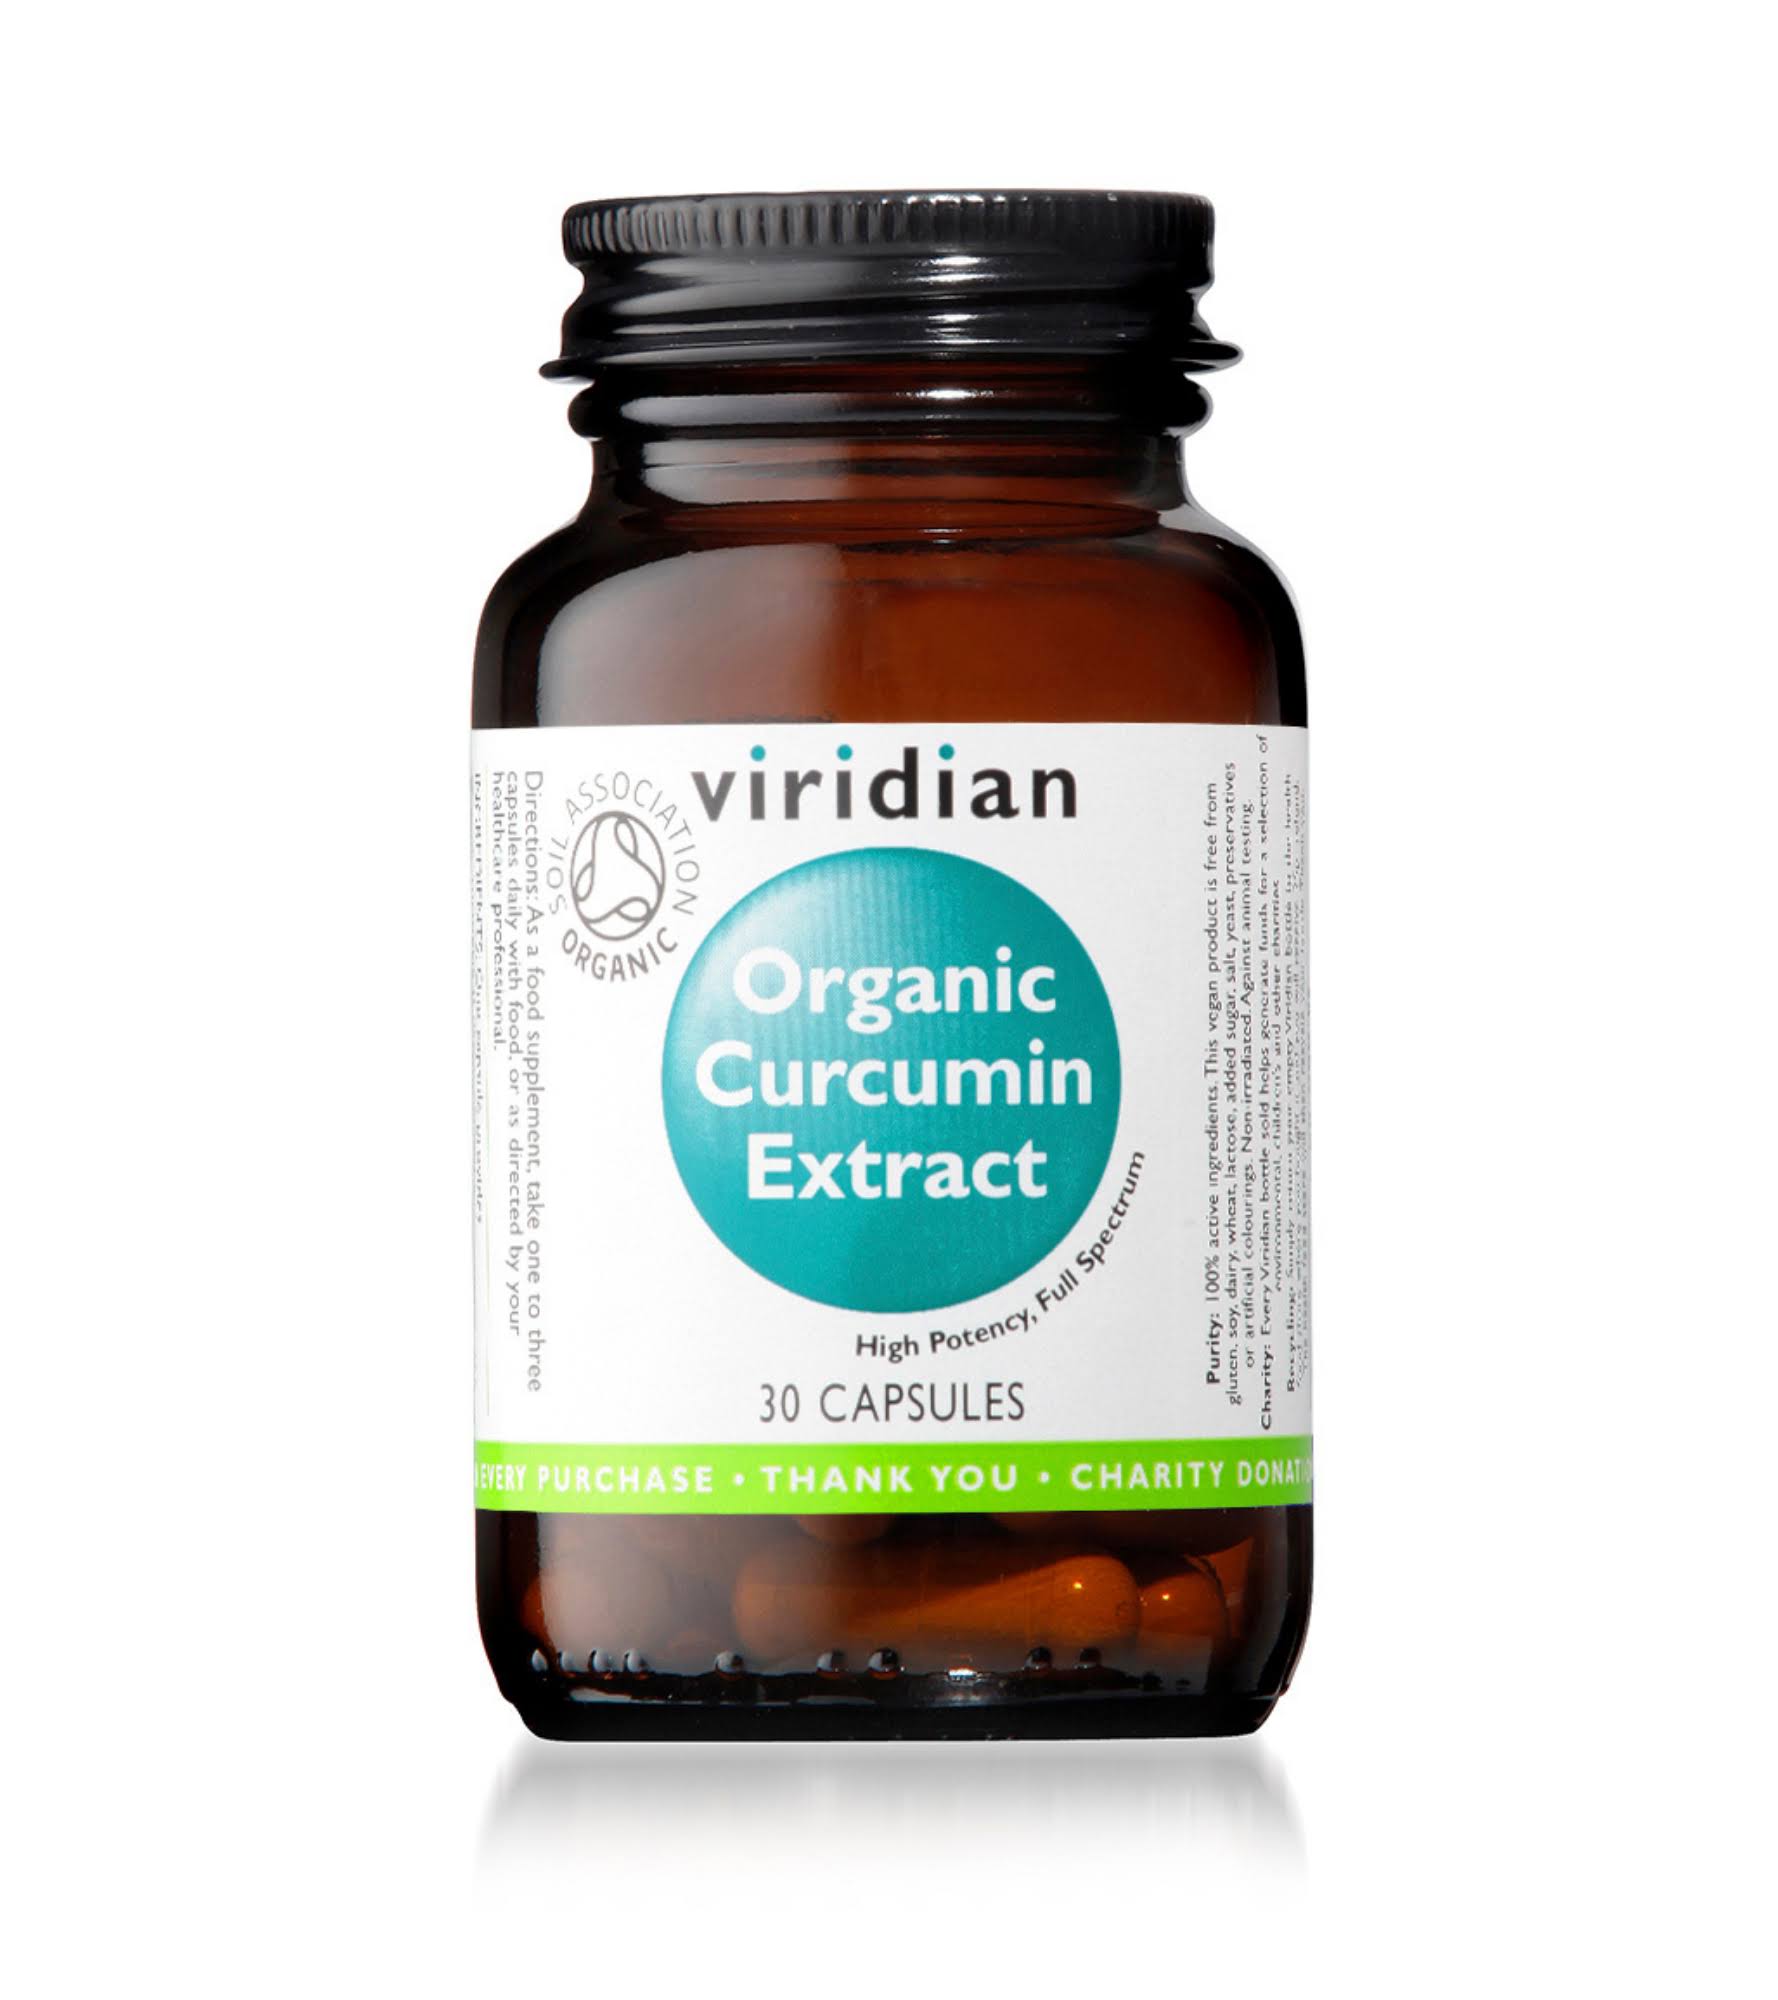 Viridian Organic Curcumin Extract (30 Capsules)